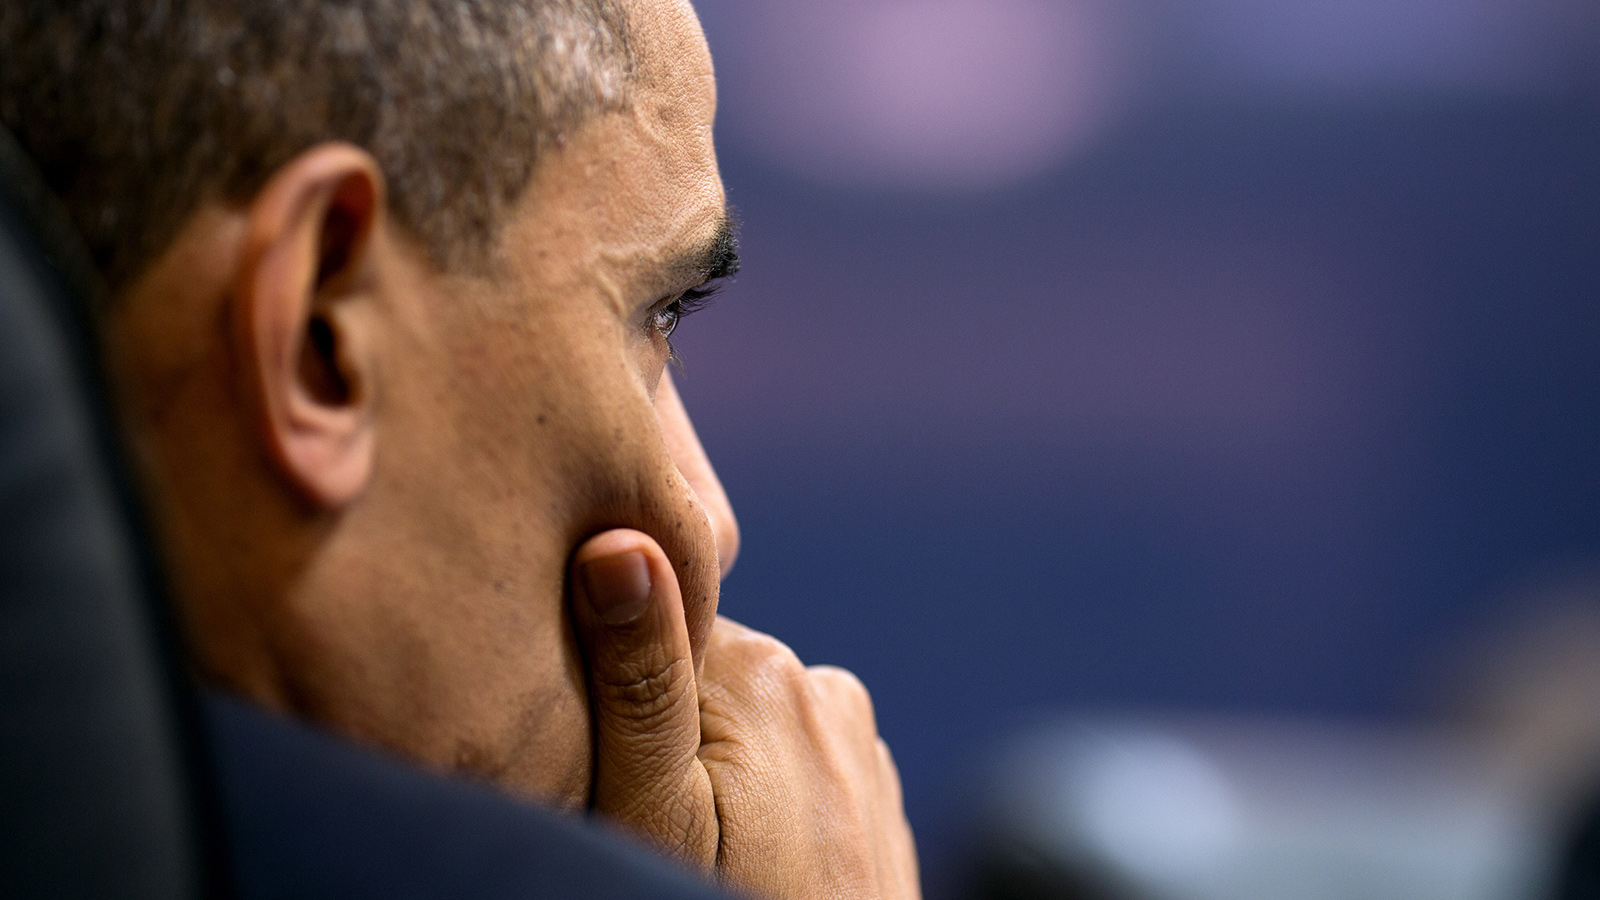 Obama pondering